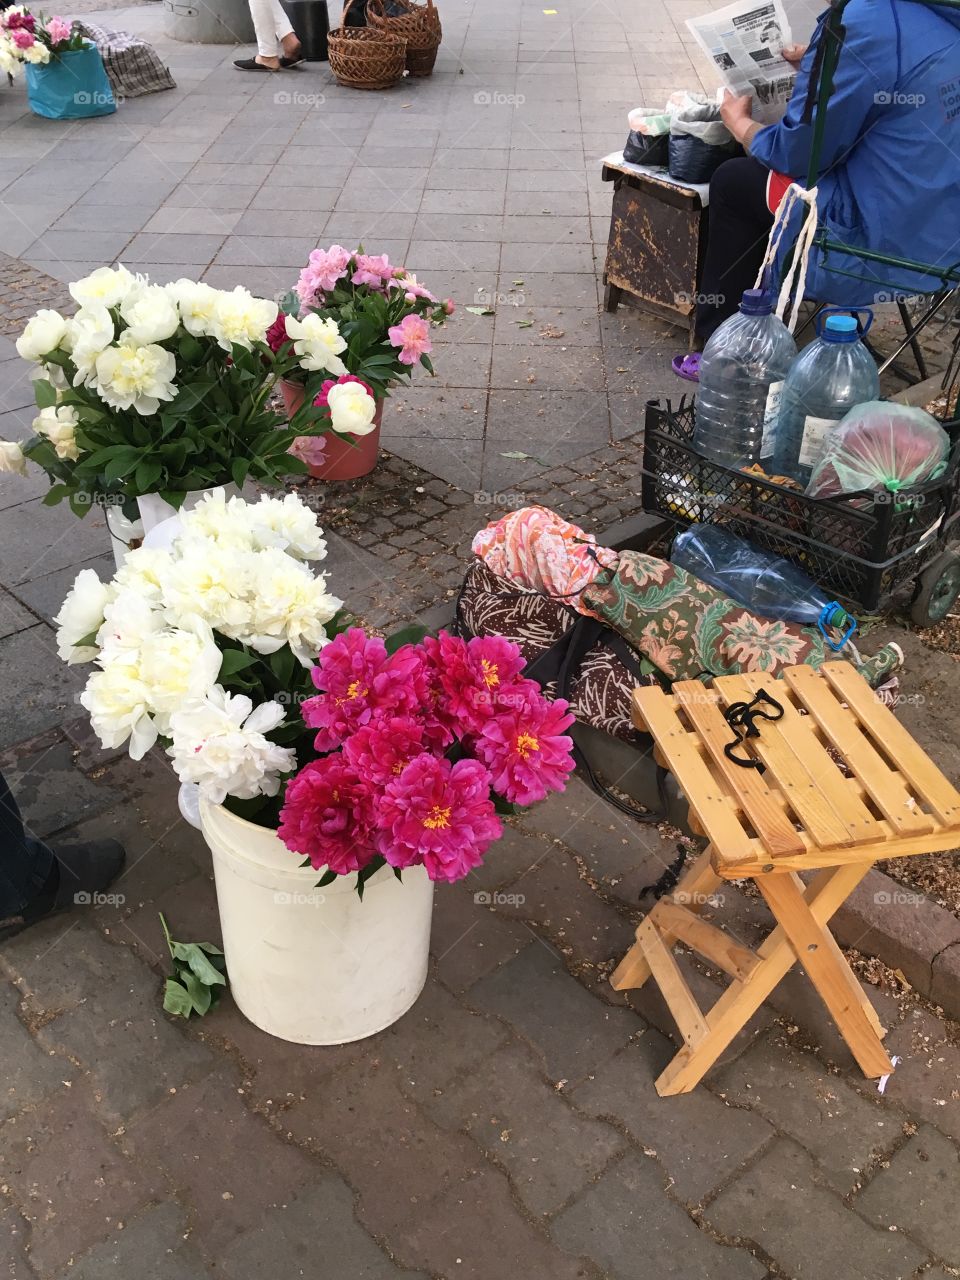 Someone selling flowers. Peonies. 